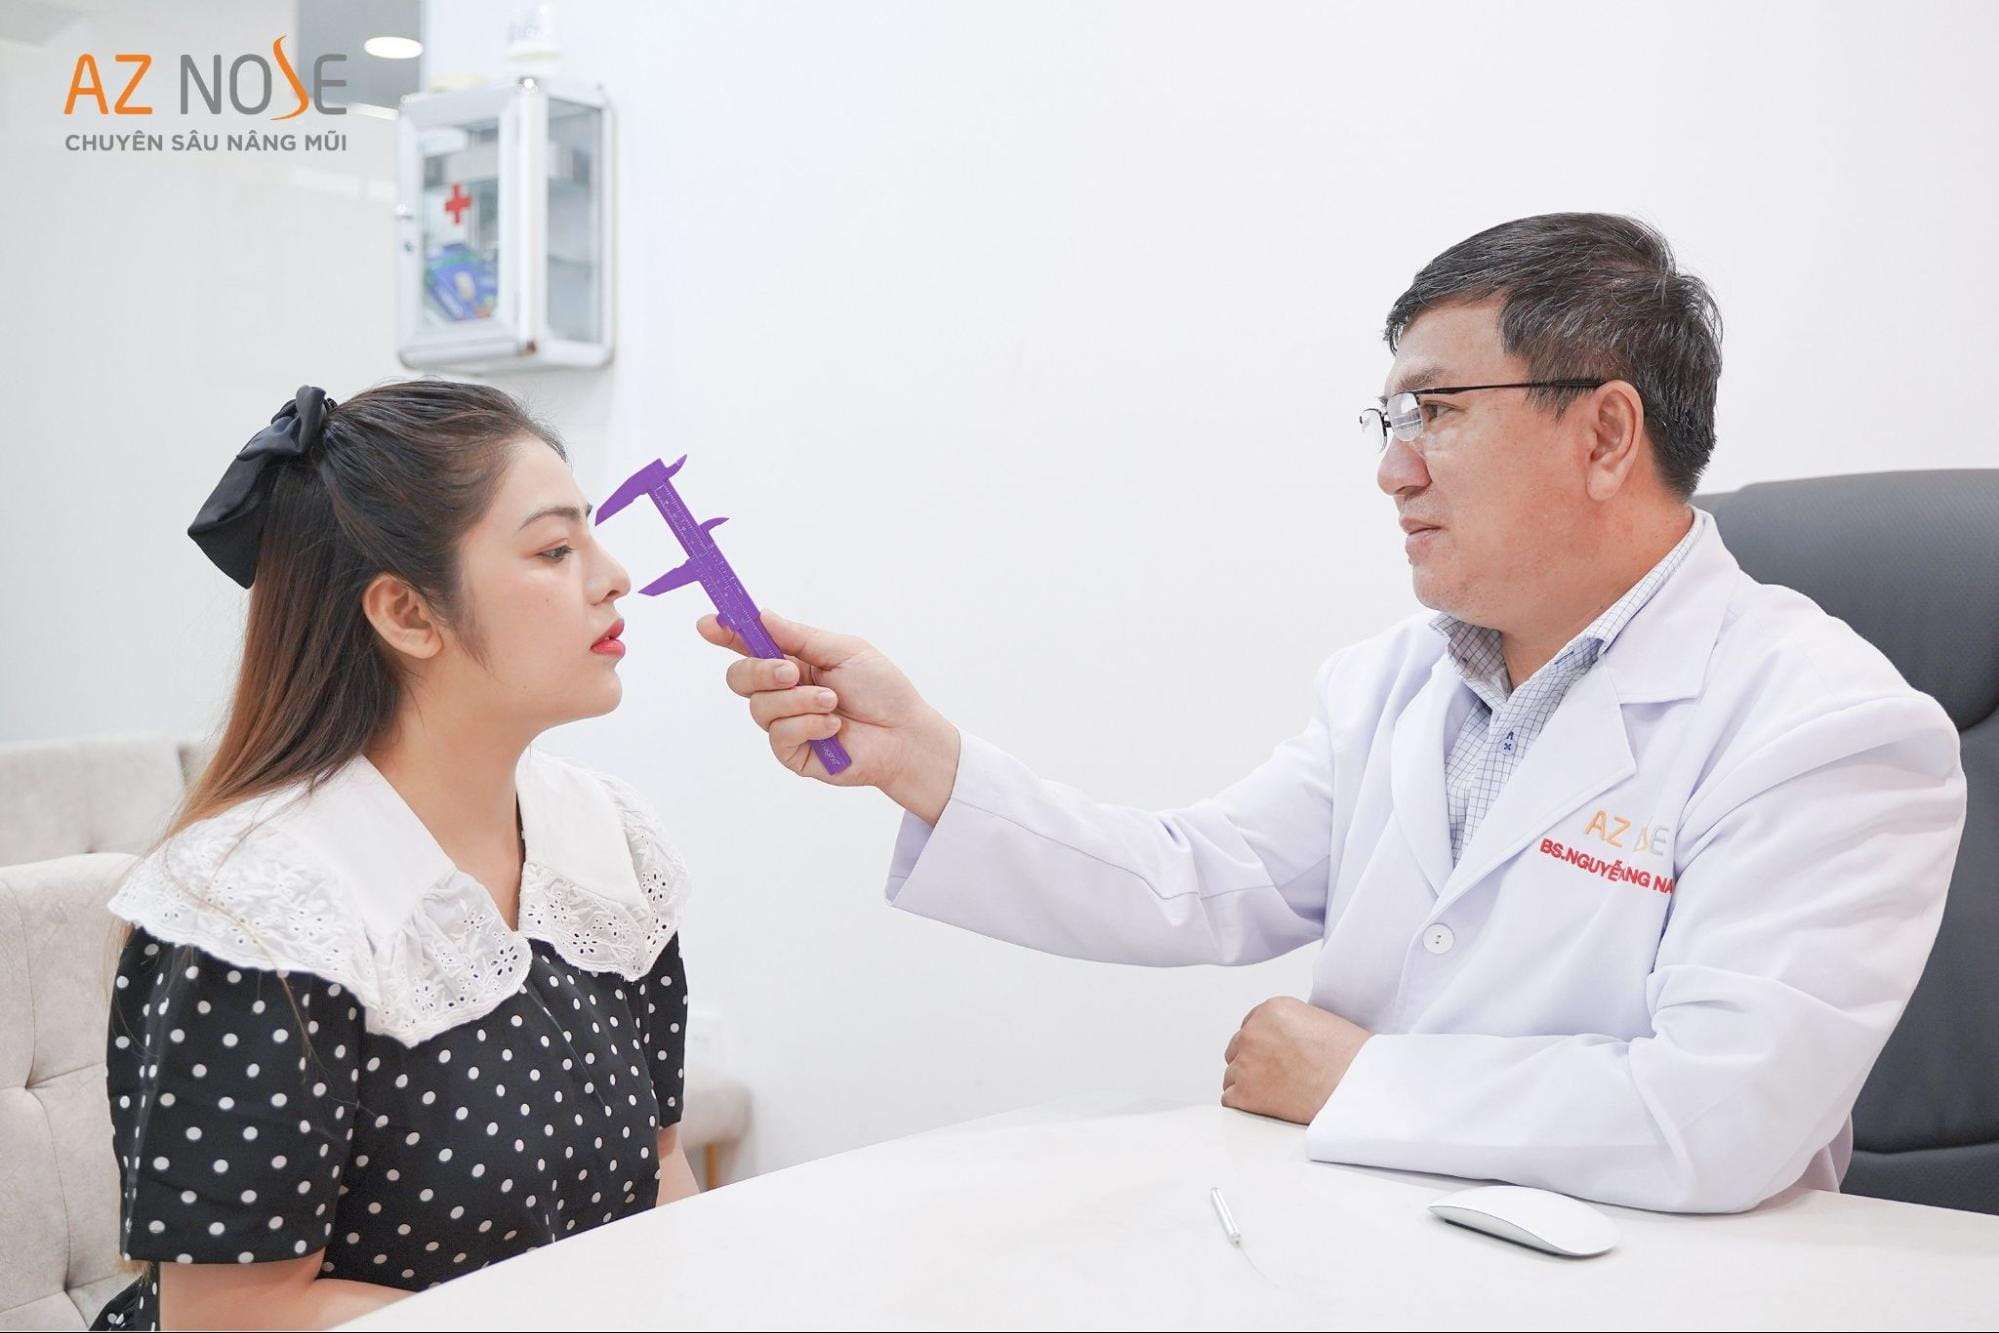 Tại AZ NOSE khách hàng được tư vấn cùng bác sĩ chuyên môn để có dáng mũi ưng ý